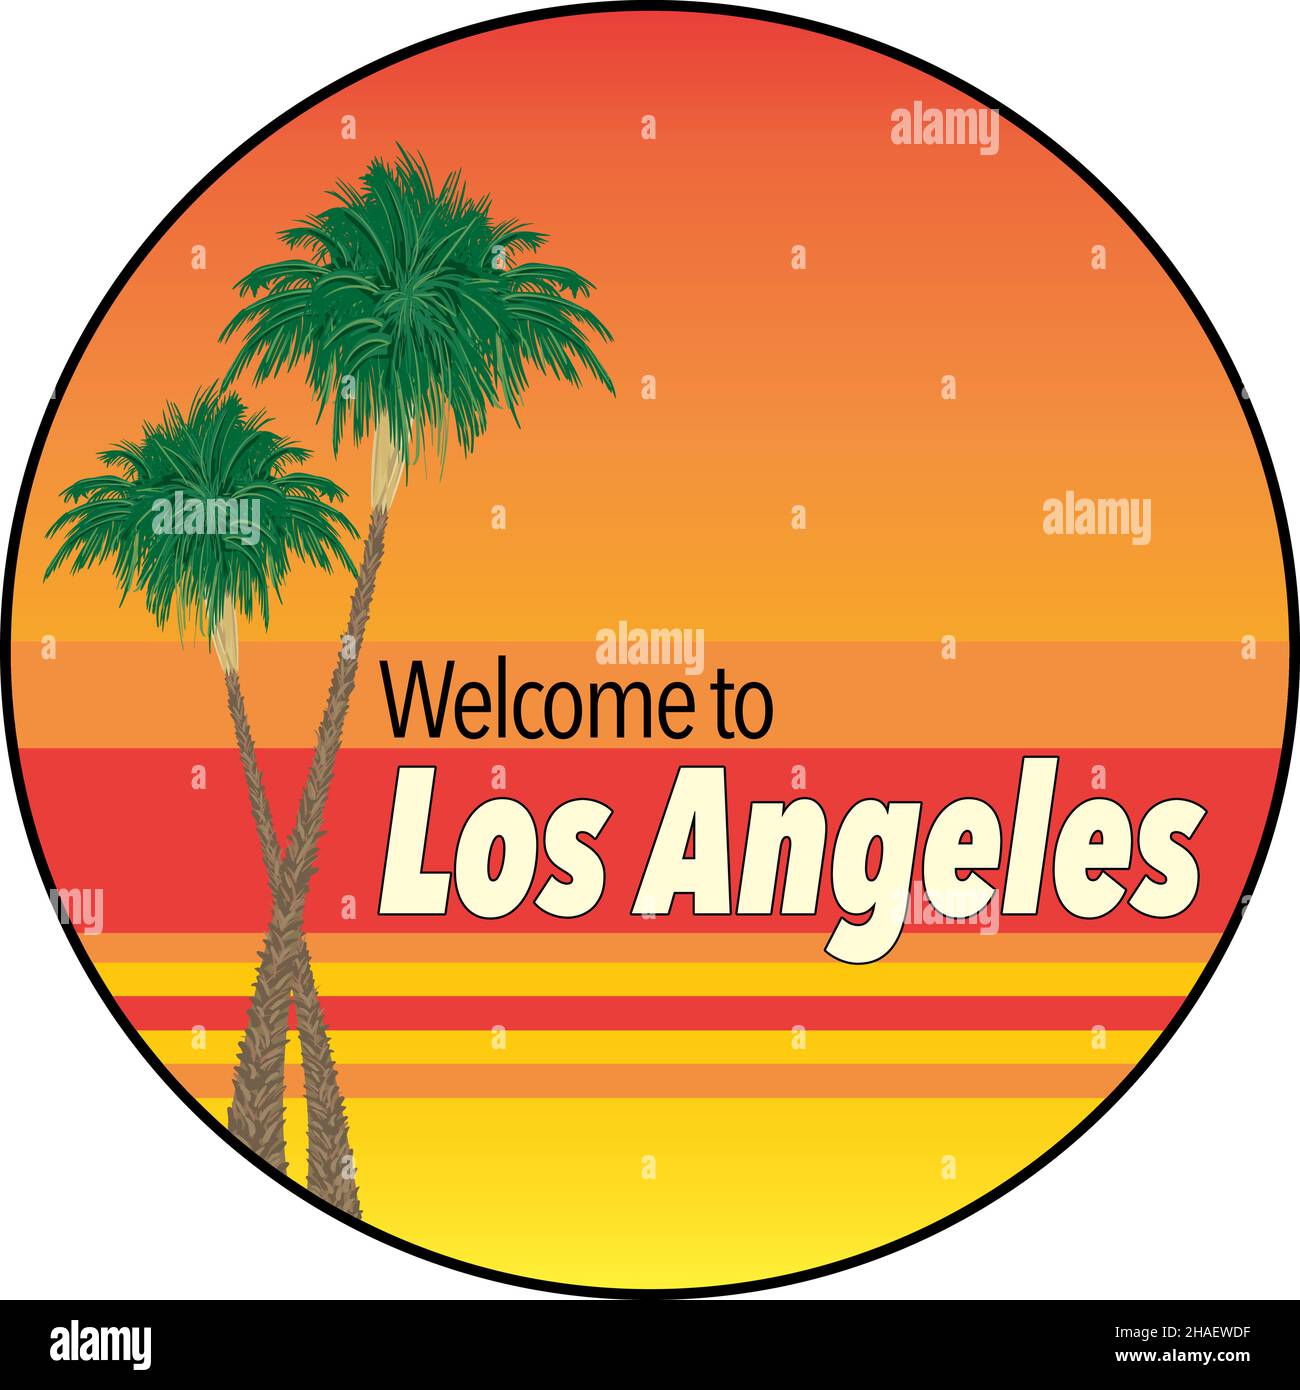 Willkommen bei Los Angeles Design mit Palmen und Sonnenuntergangsfarben - Vektor Illustration Stock Vektor